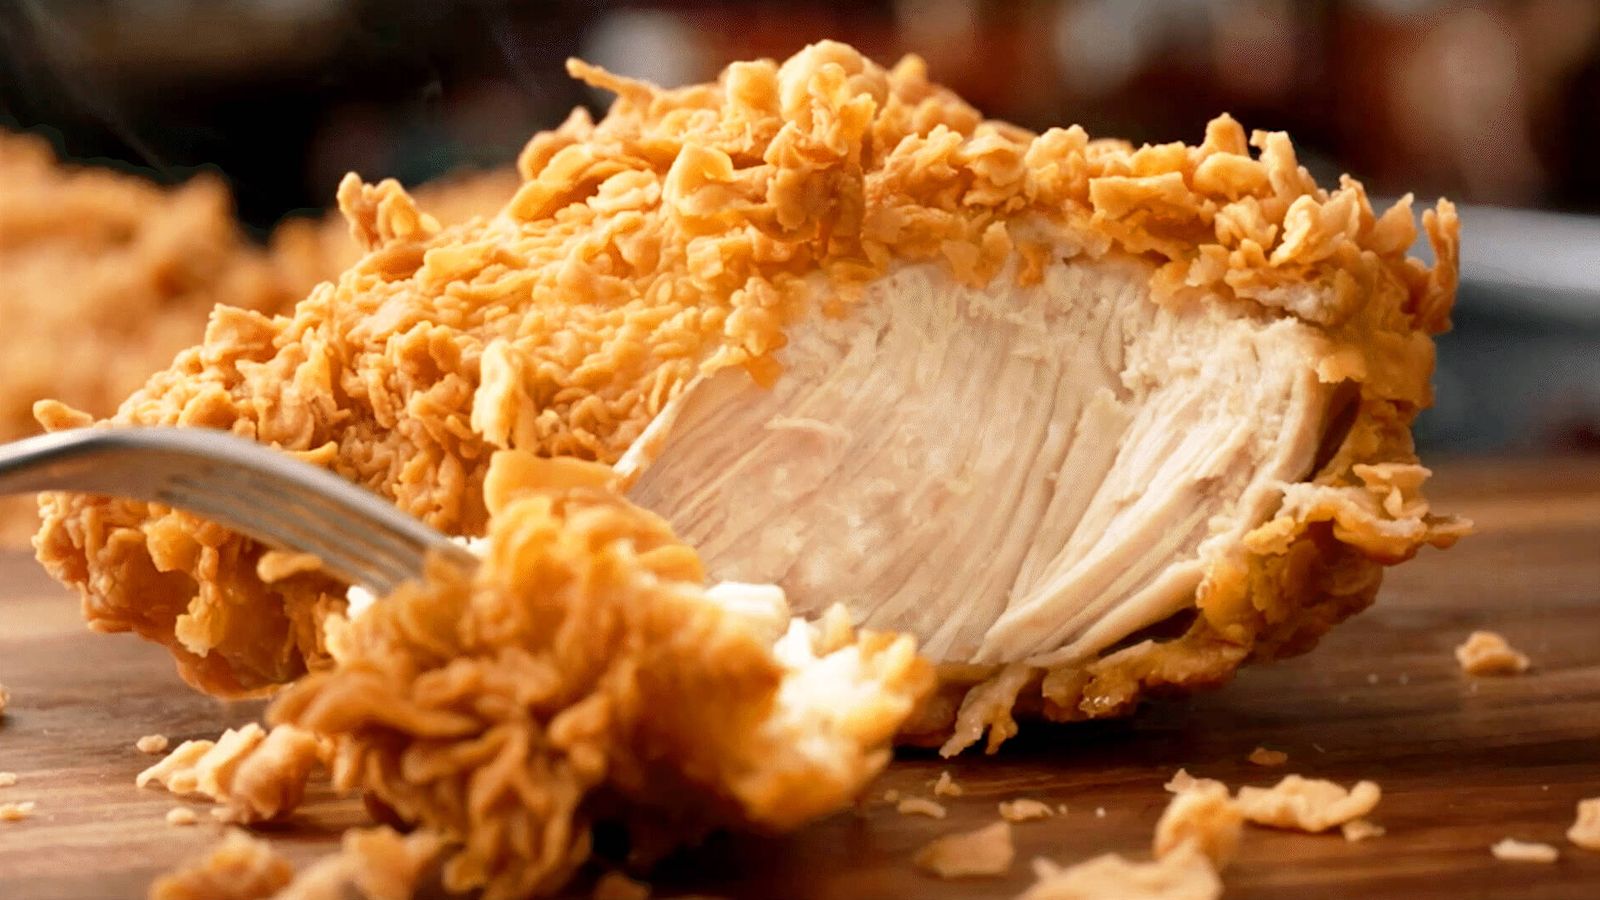 El pollo se marina durante 12 horas en una mezcla de especias cajún y los chefs rebozan cada pieza a mano. (Foto: cortesía)